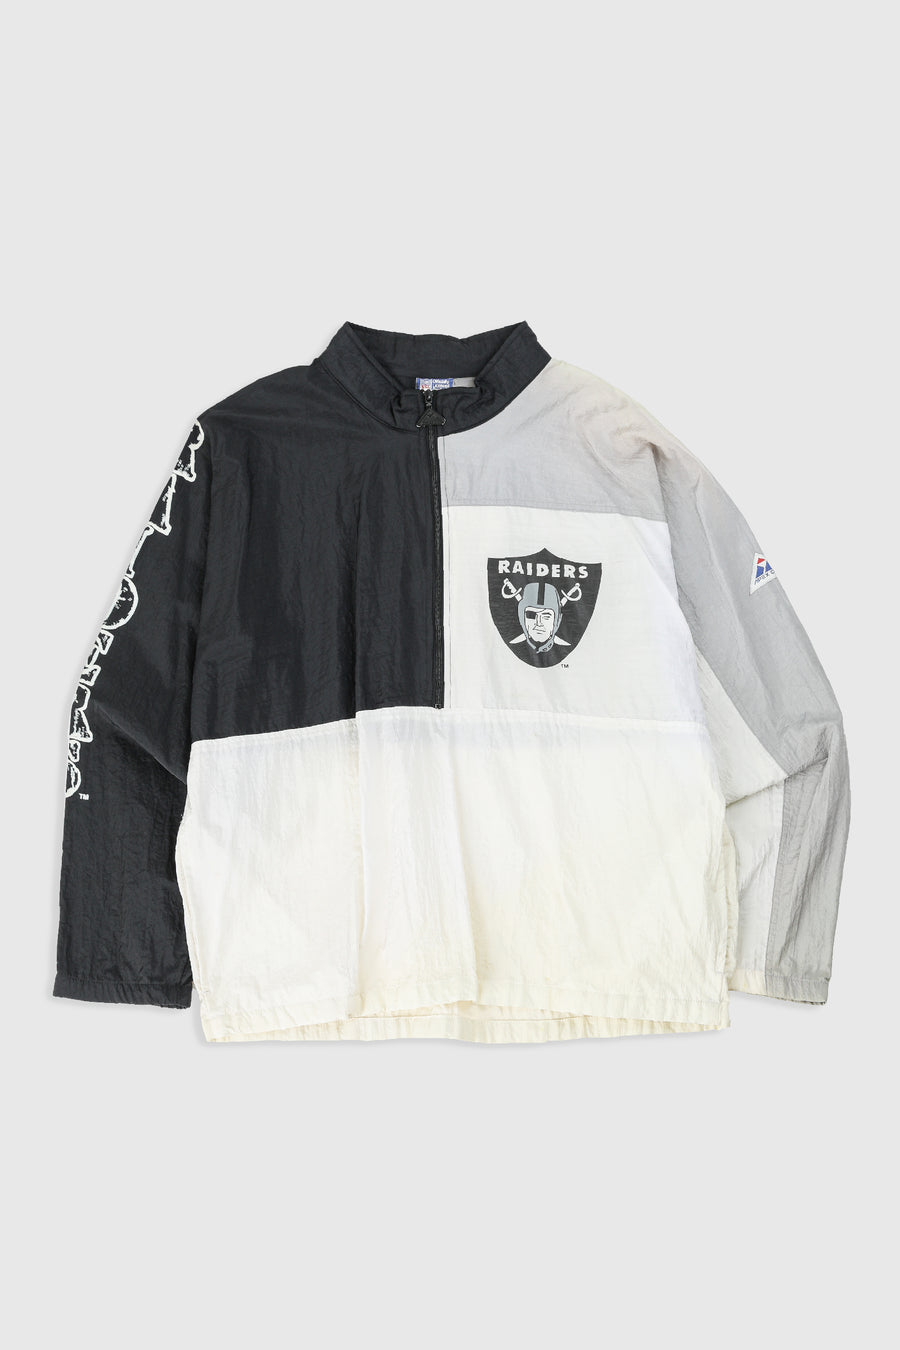 Vintage Raiders NFL Windbreaker Jacket - XL